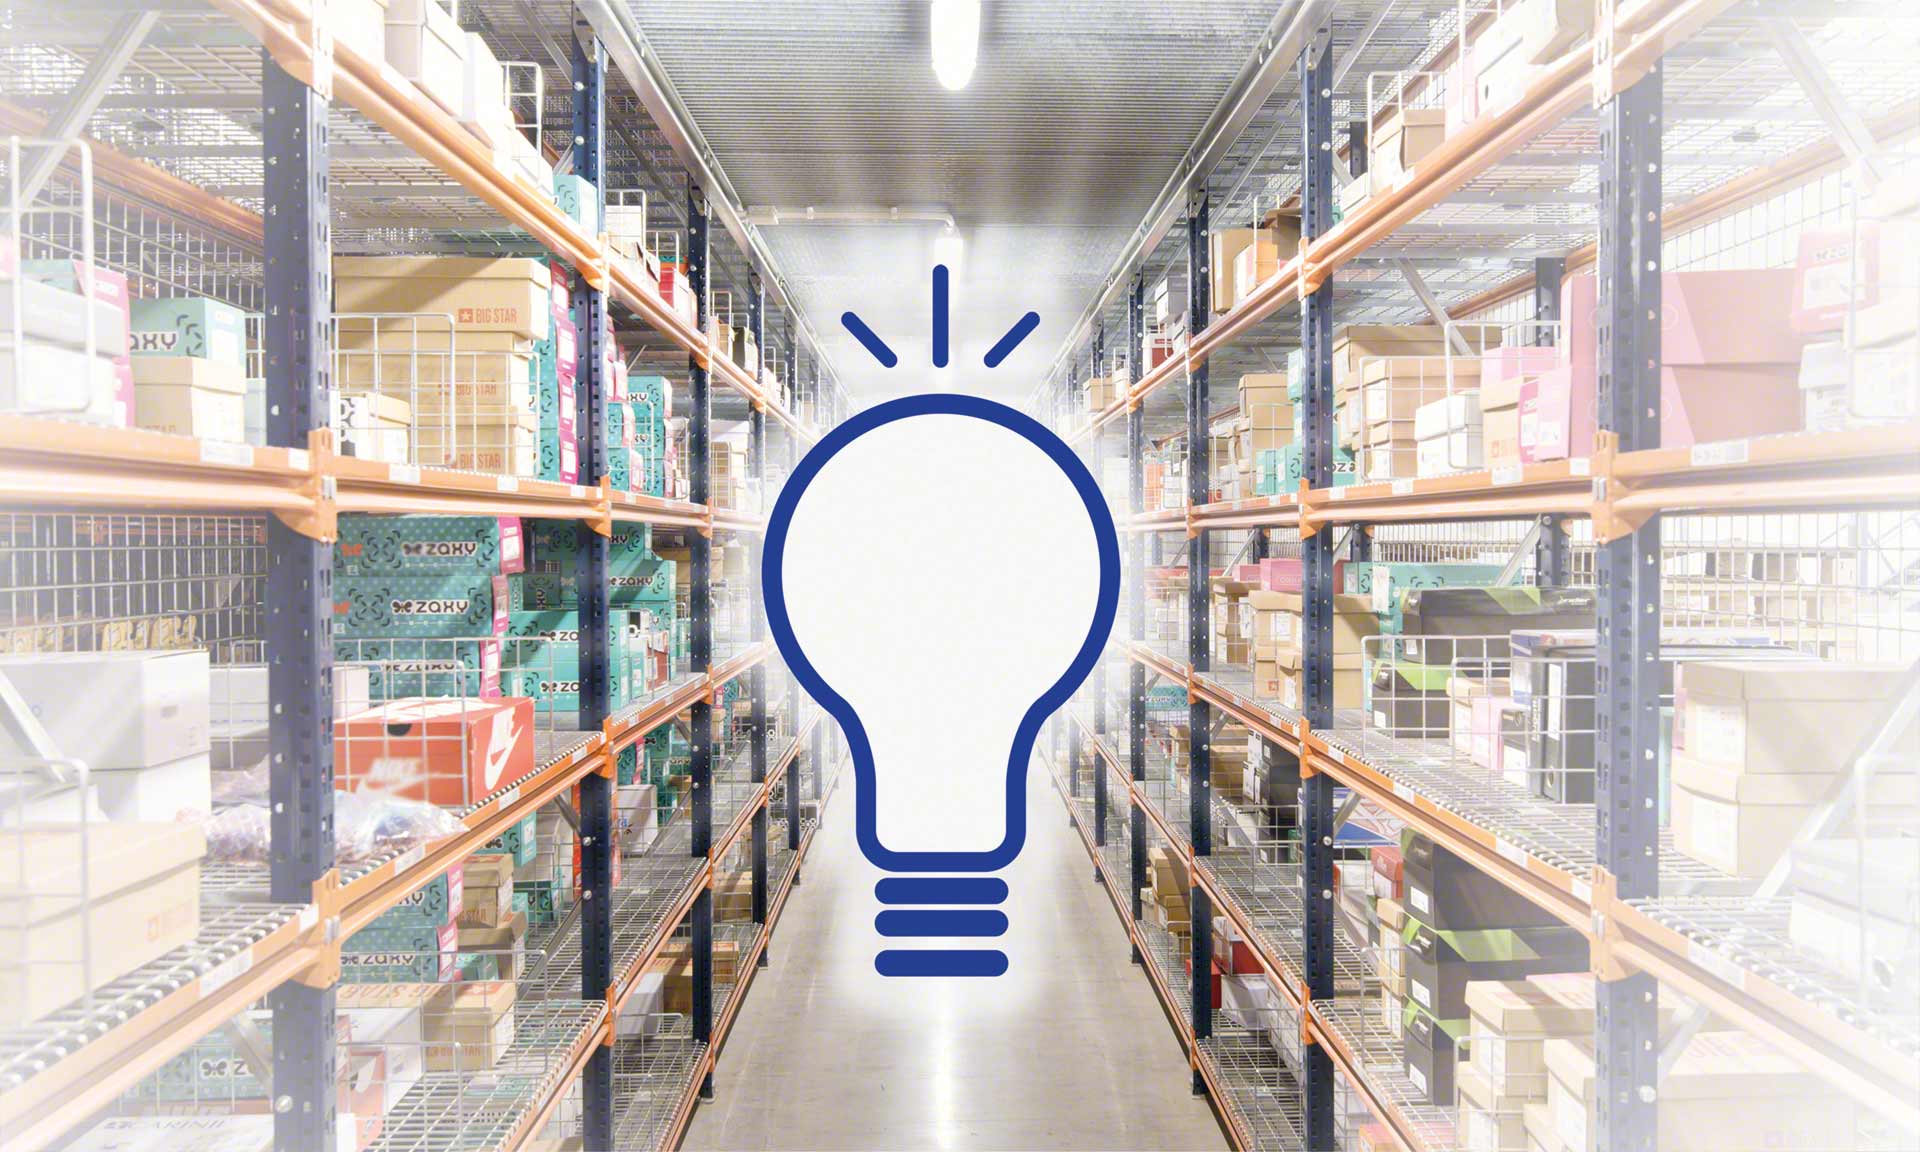 倉庫照明:生產力、安全和節約的問題